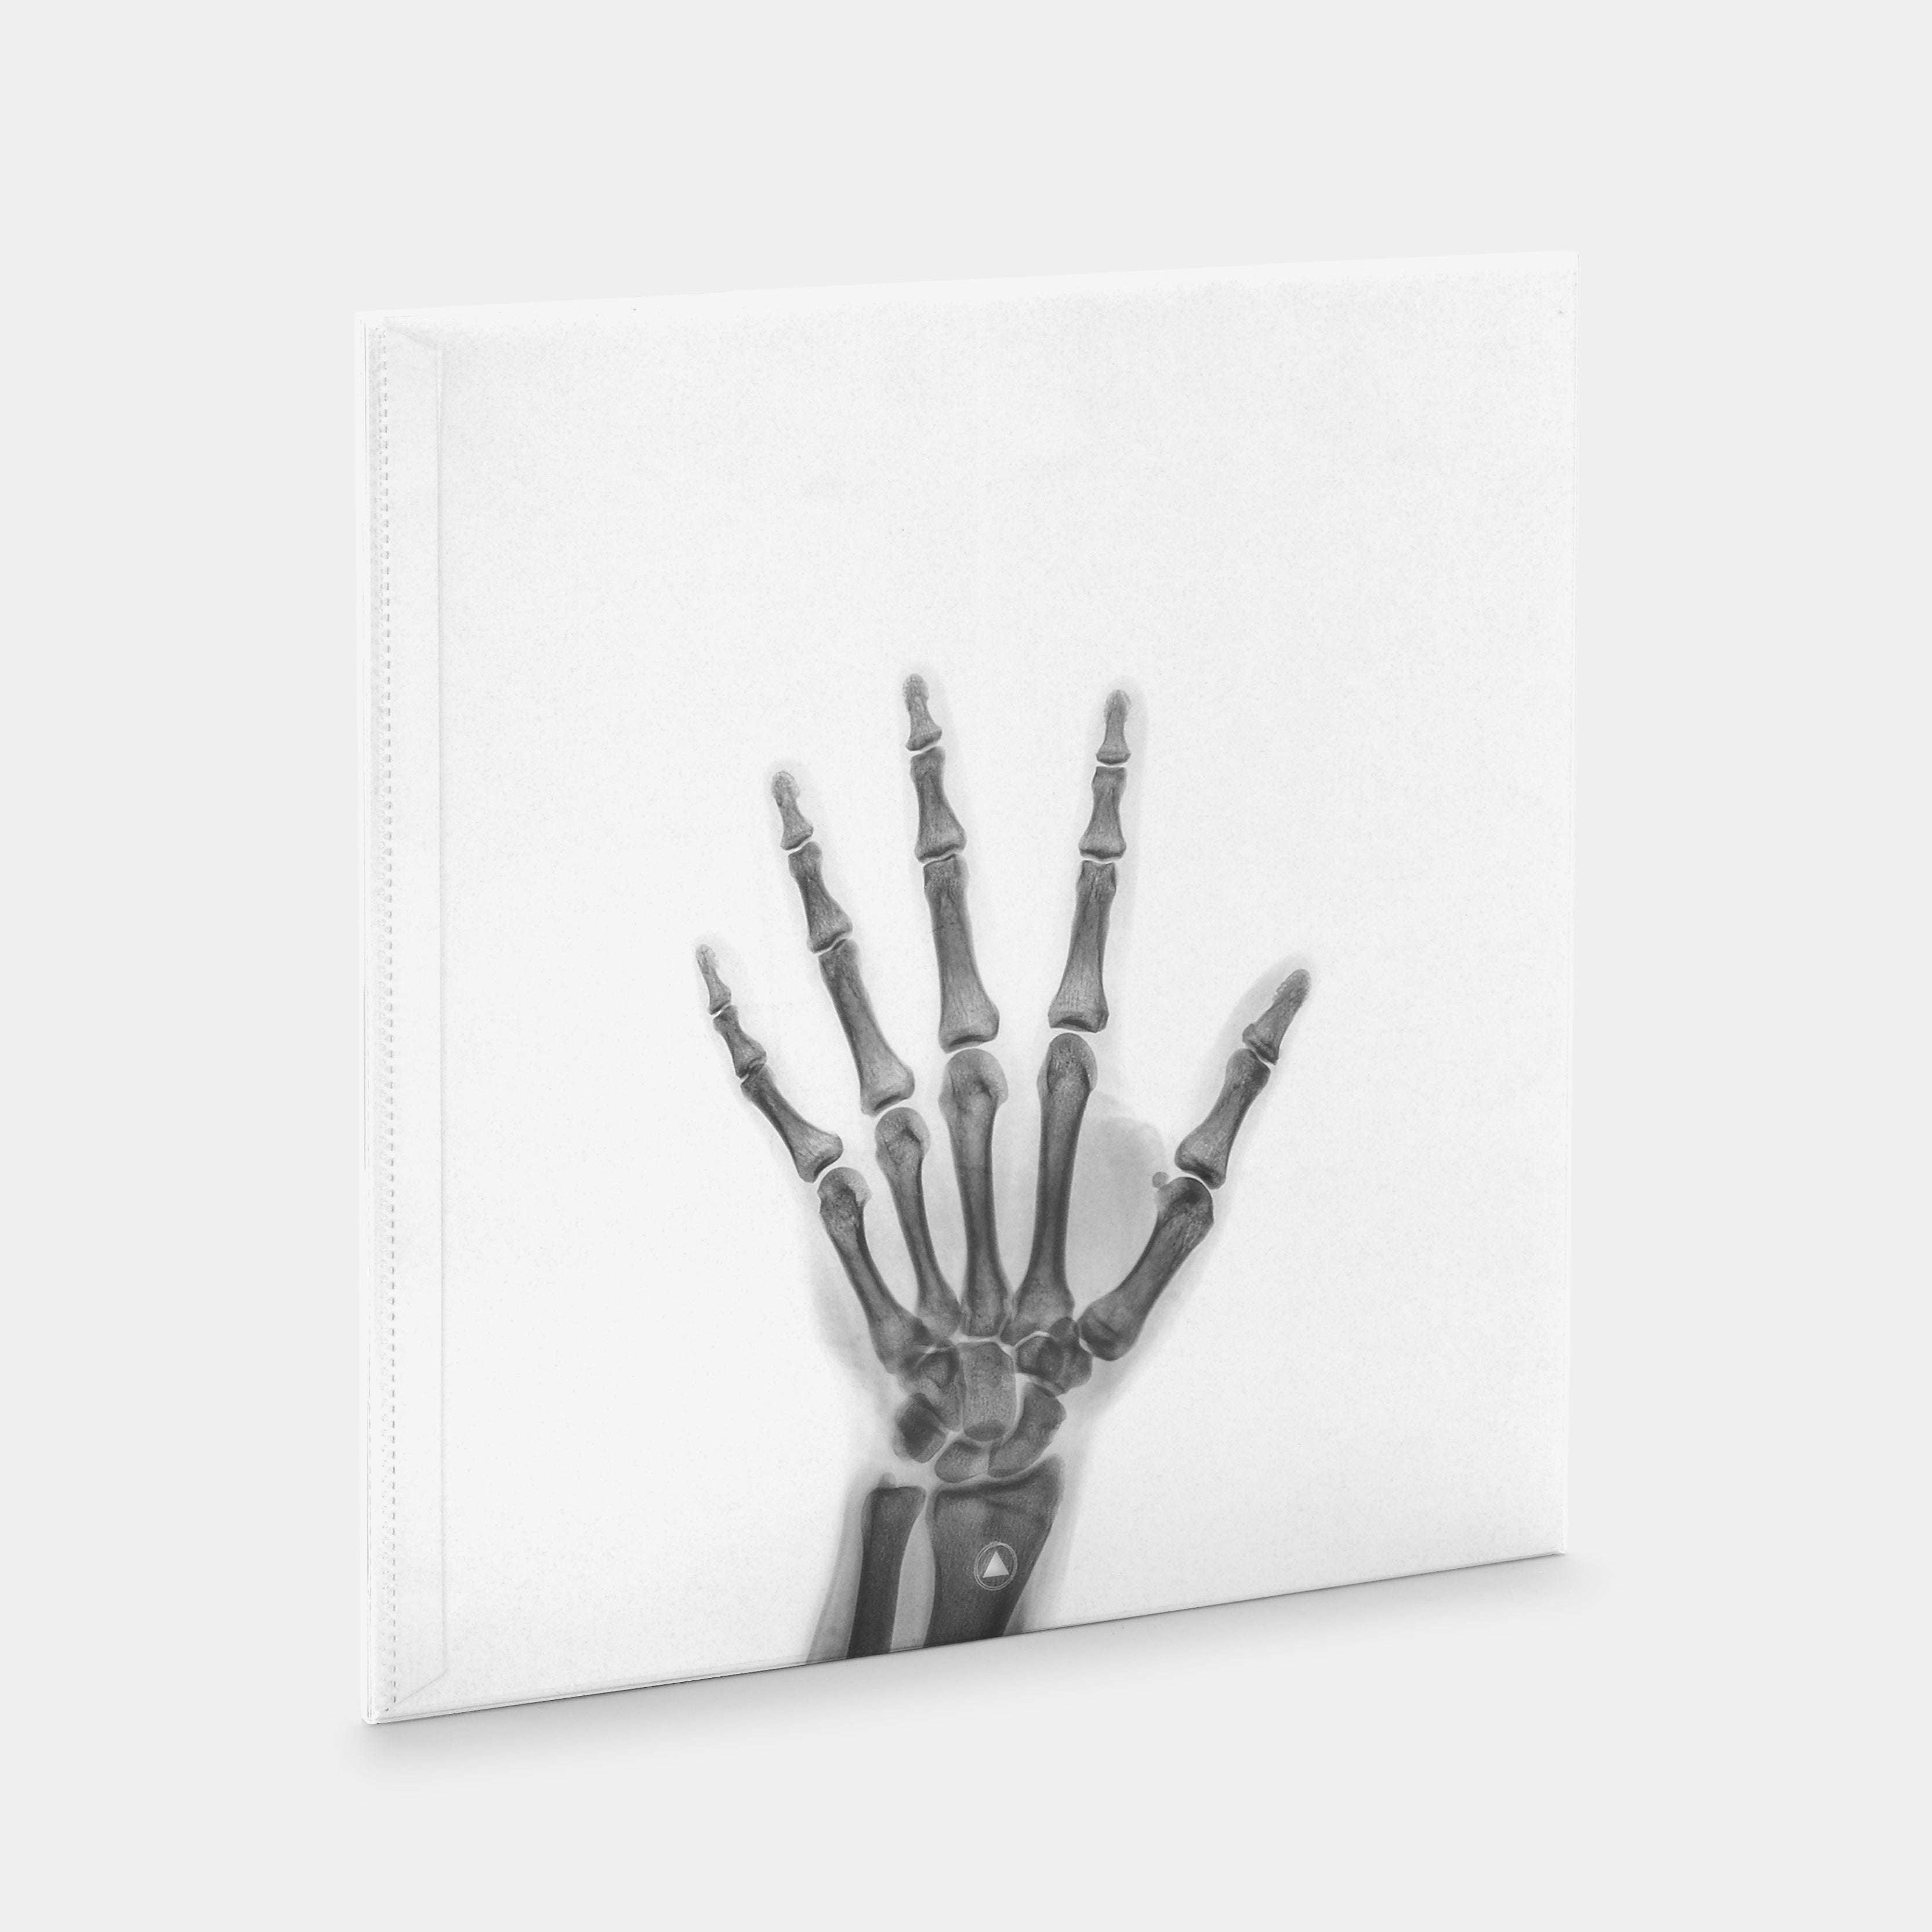 John Carpenter - Skeleton LP Blood Red Vinyl Record